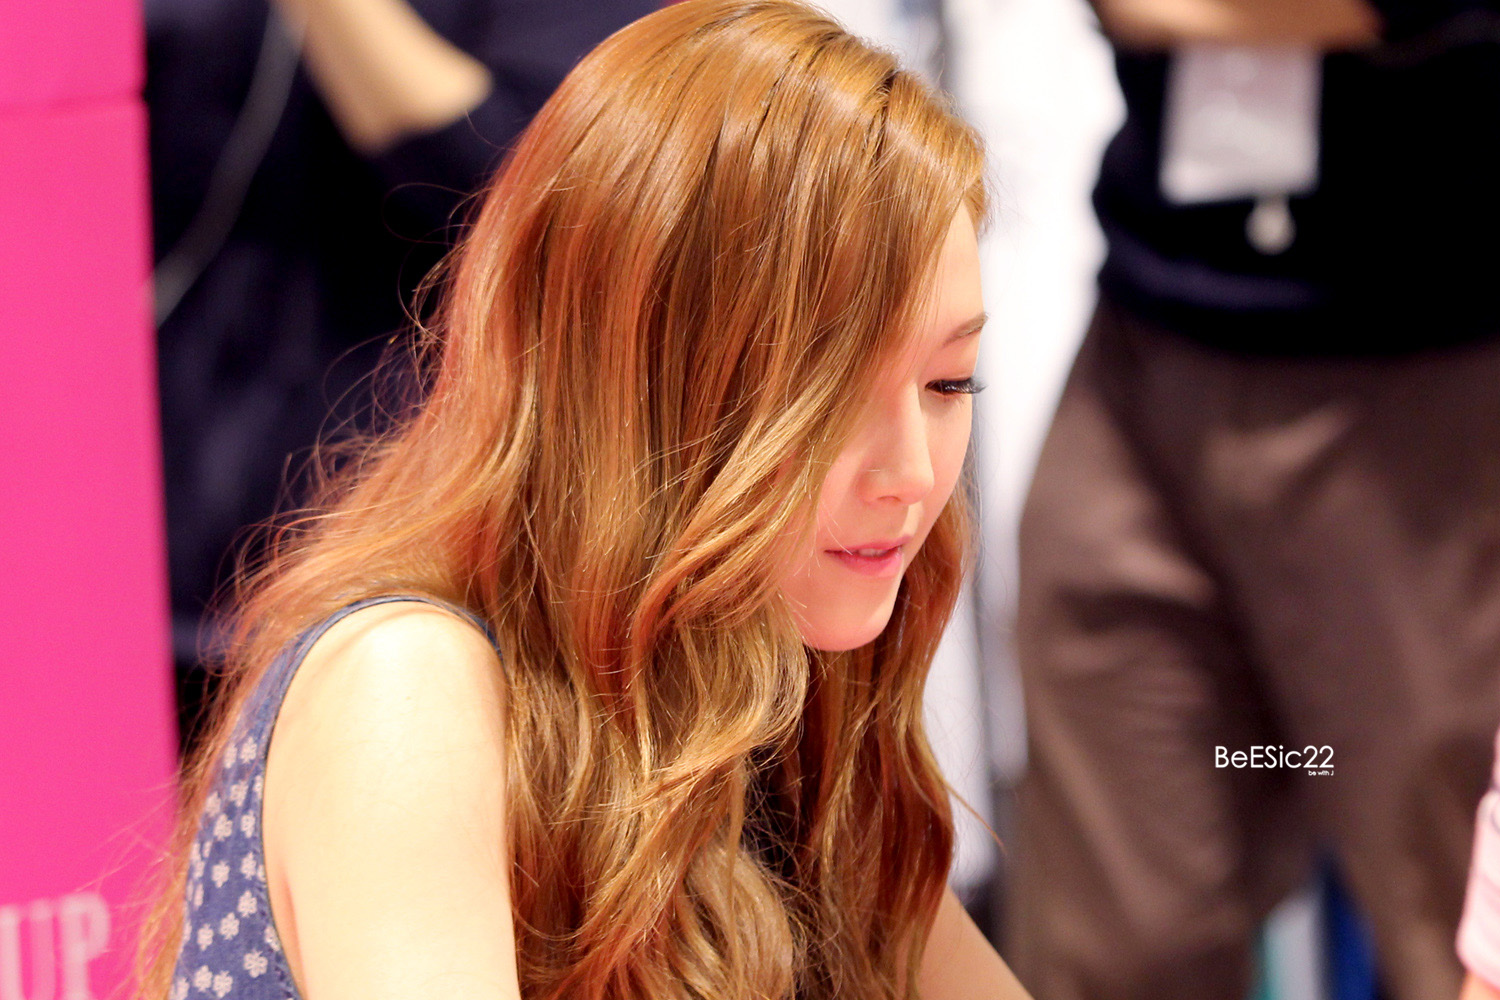 [PIC][14-06-2014]Jessica tham dự buổi fansign lần 2 cho thương hiệu "SOUP" vào trưa nay - Page 2 2613F94353DBA0640BA5C8